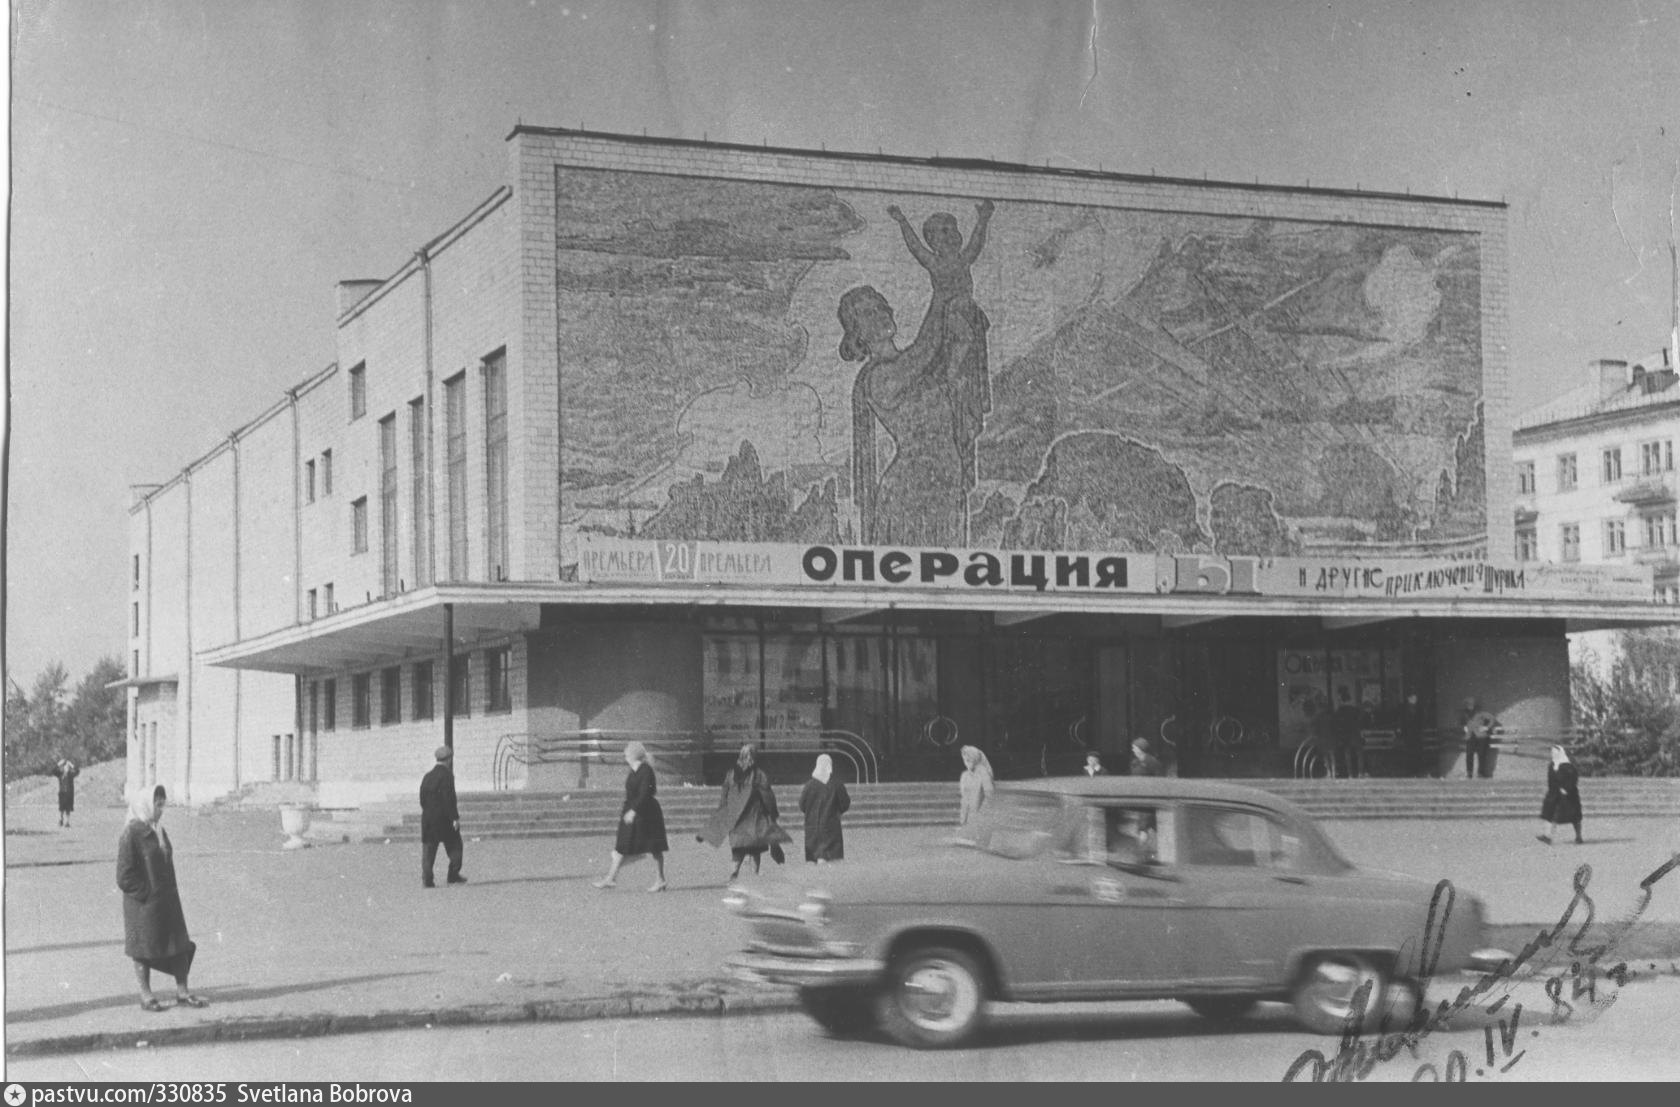 Кинотеатры города красноярск